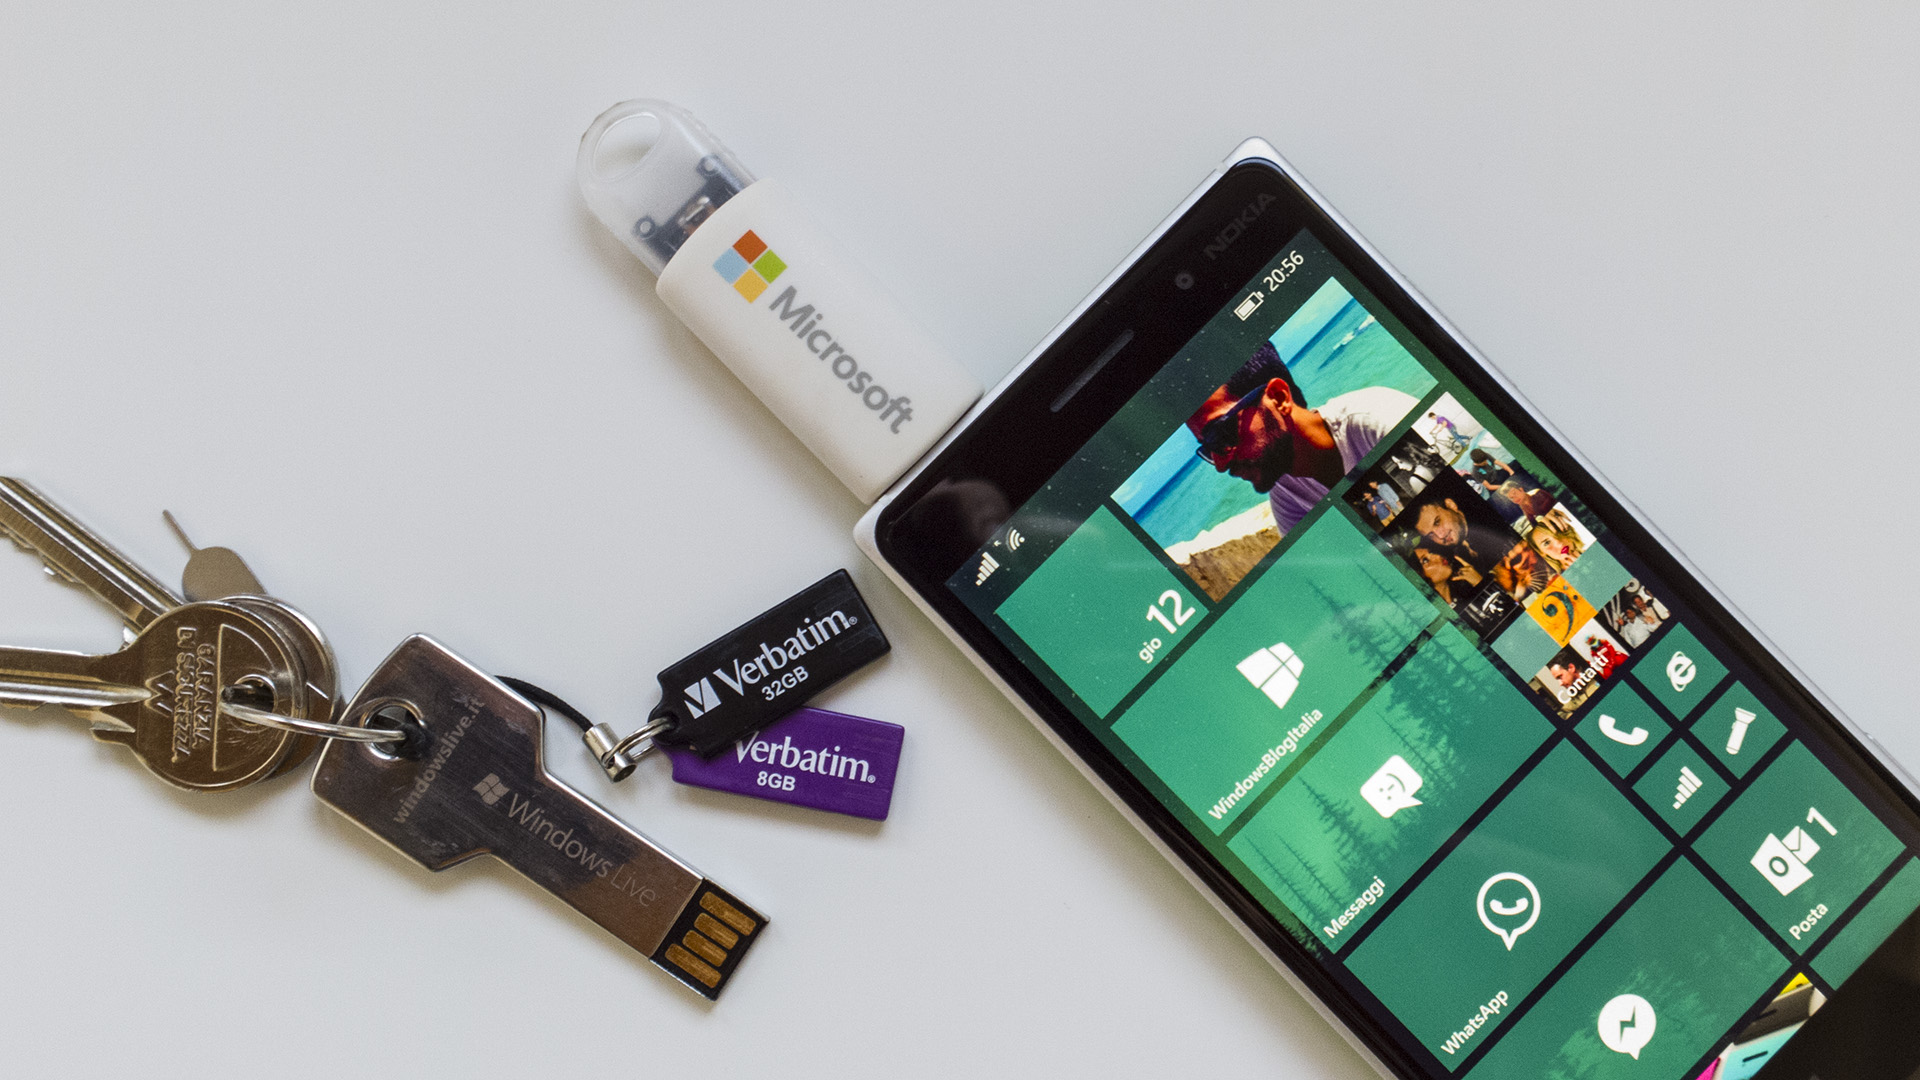 Windows 10 Mobile USB on-the-go OTG